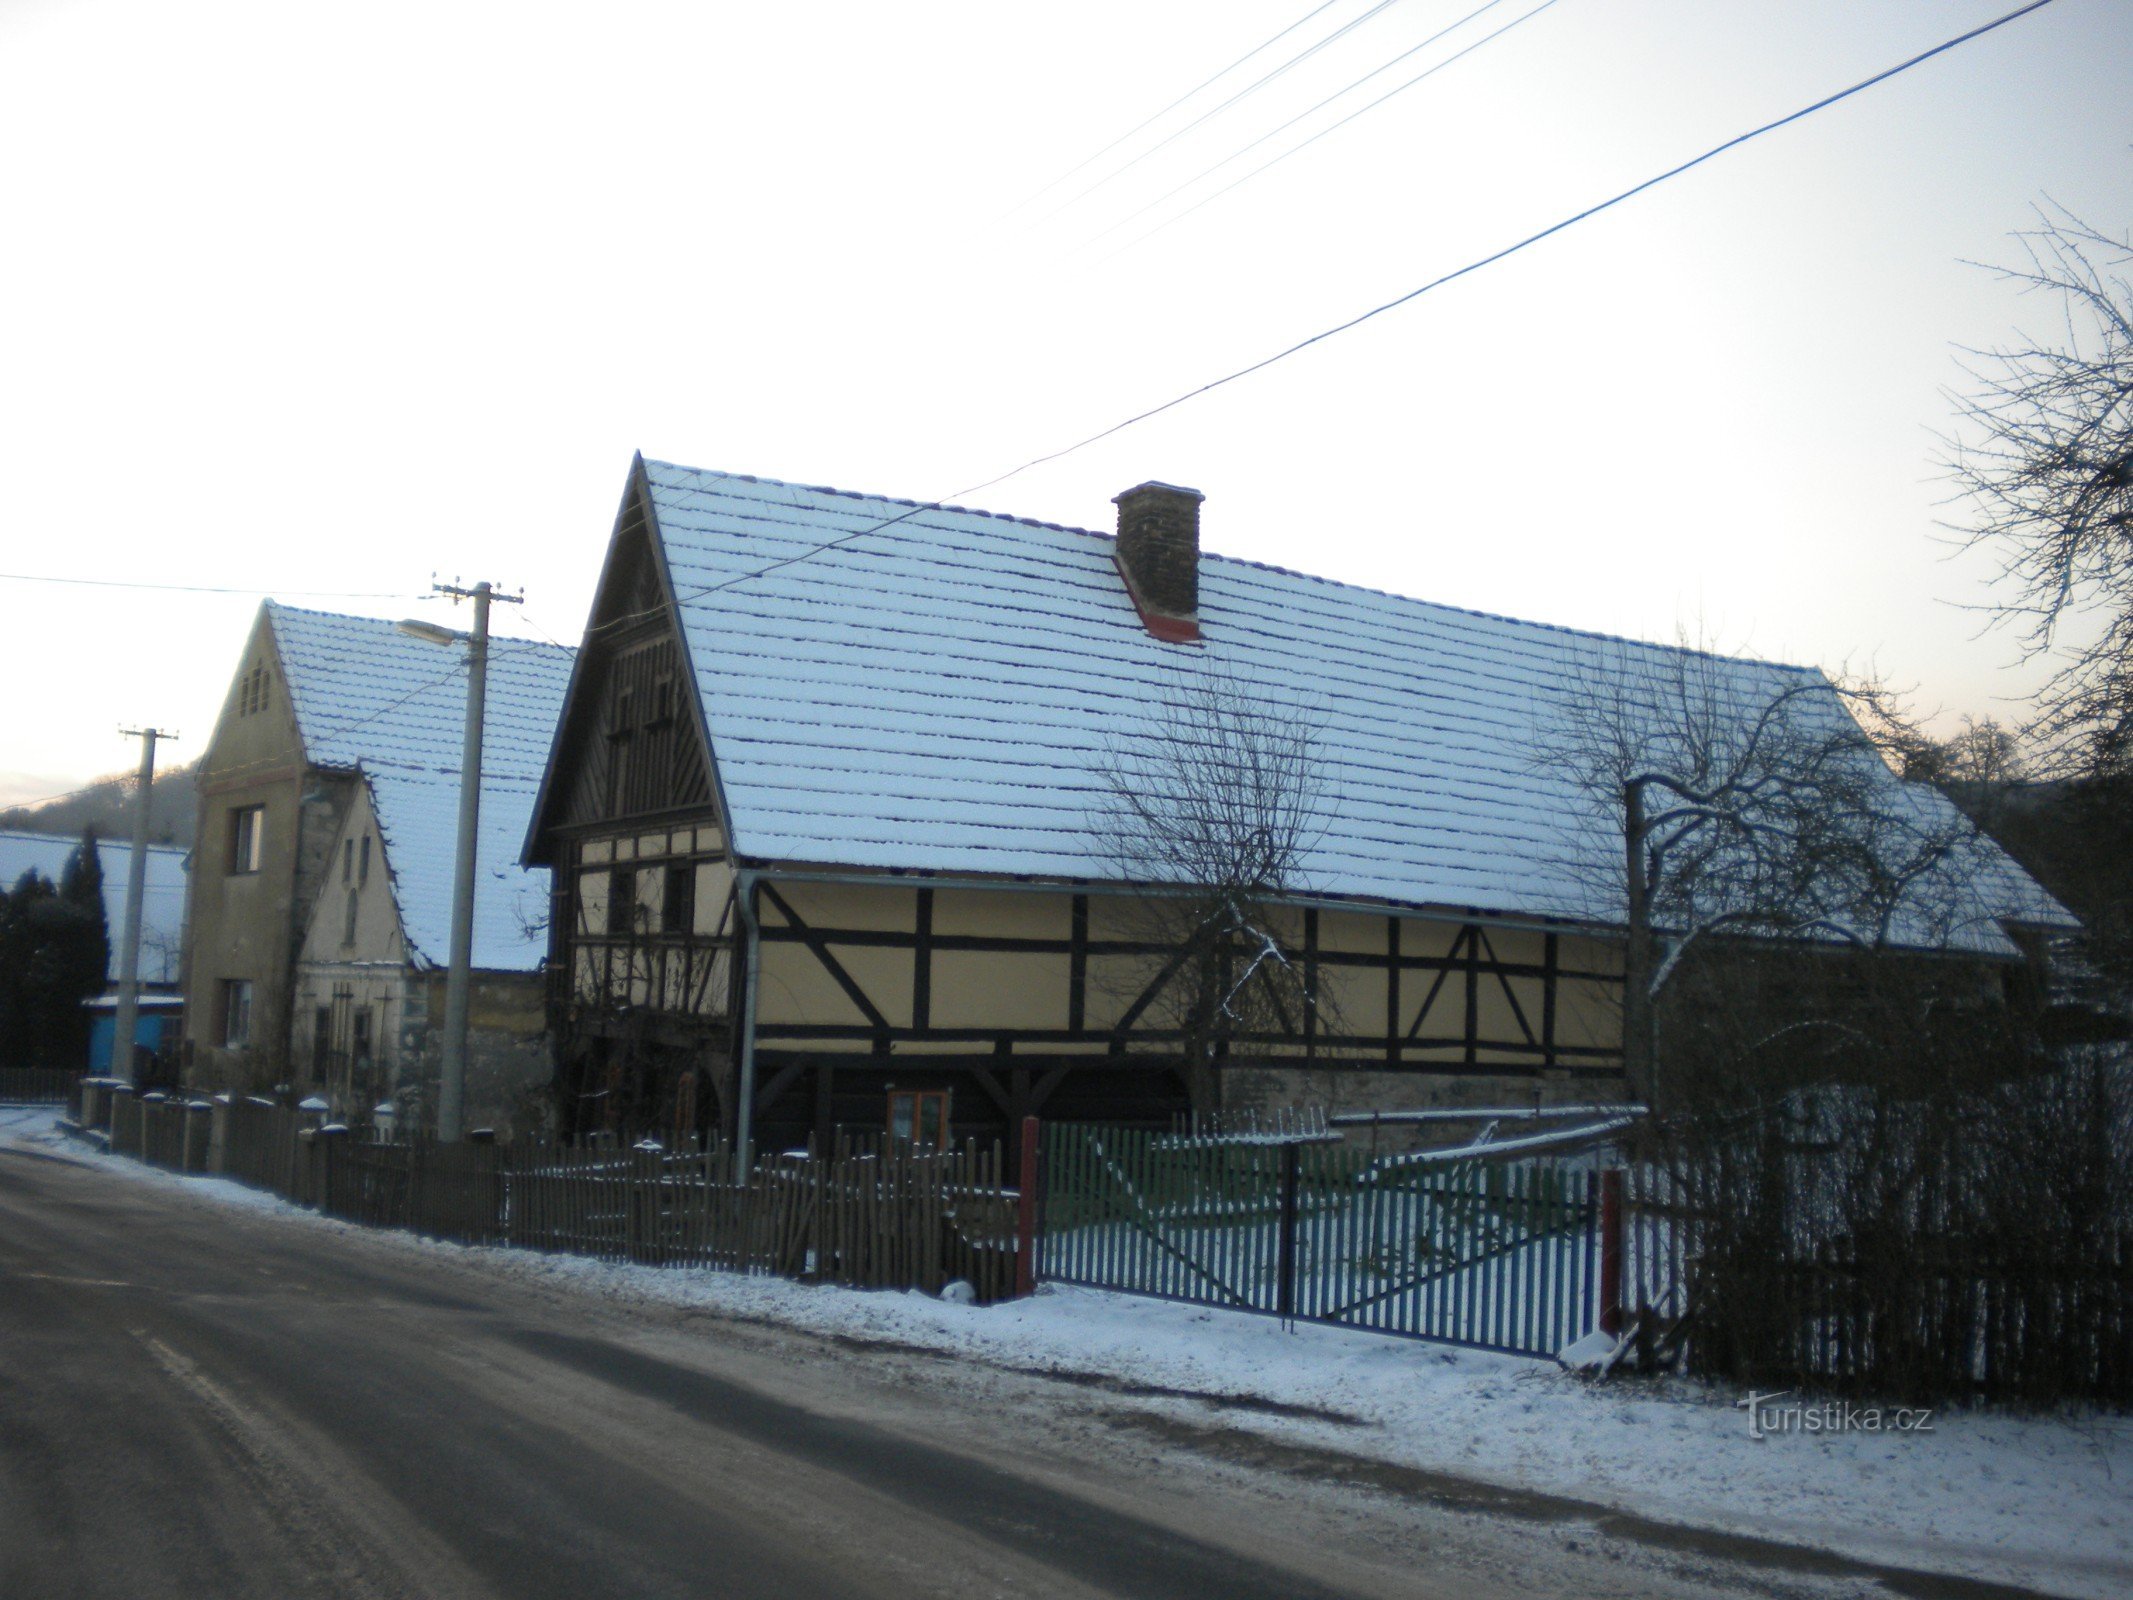 Brunarica v Hrušovcih, slika je bila posneta 25.1.2014. januarja XNUMX.